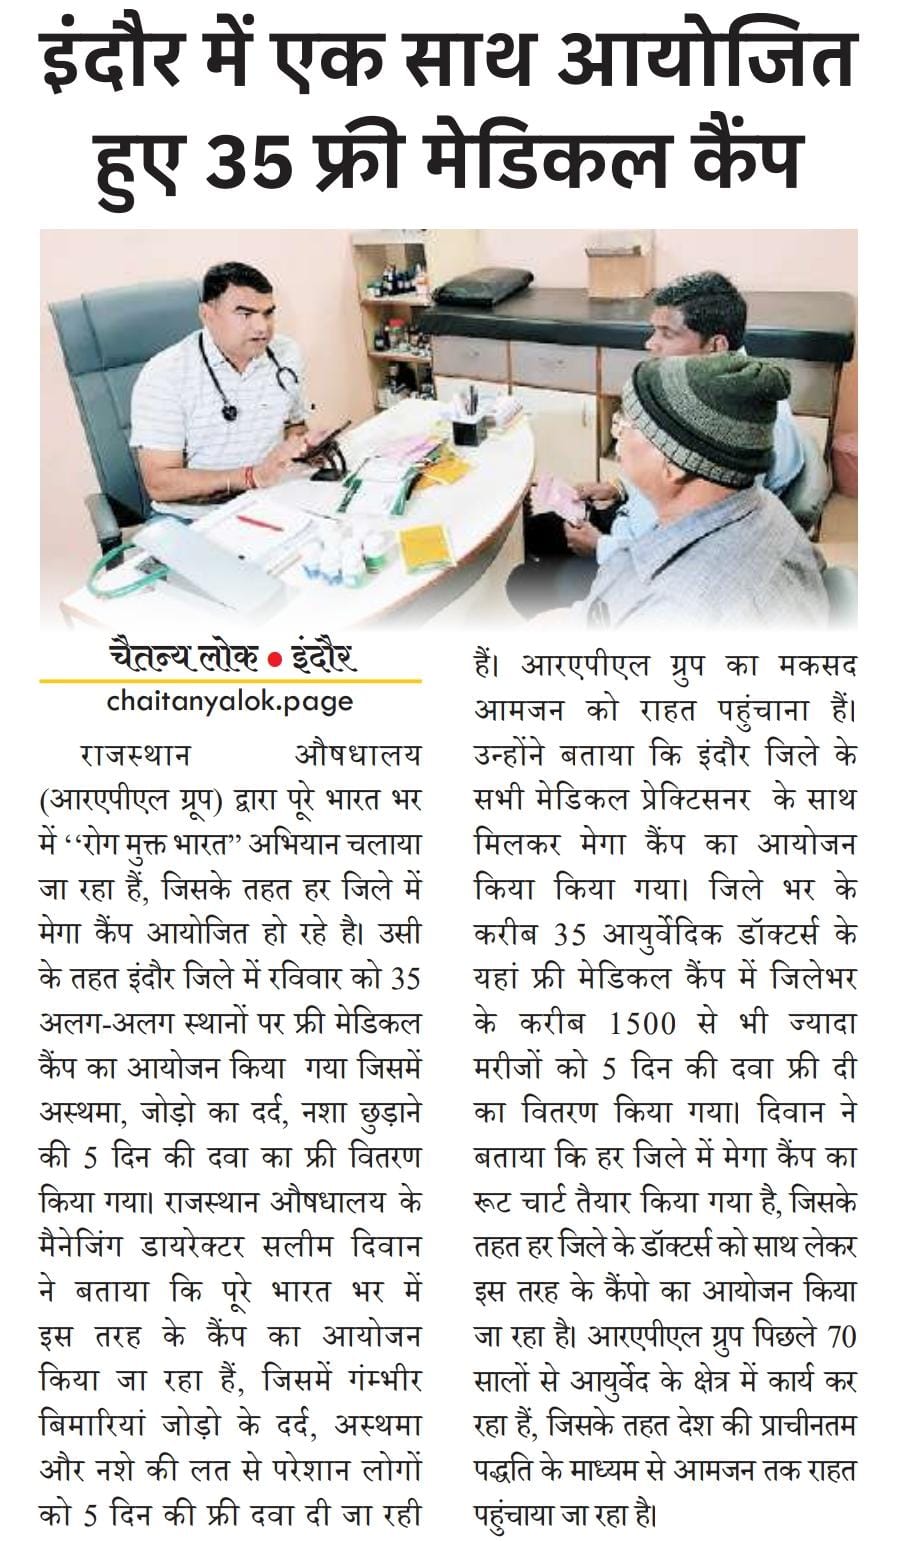 Rajasthan Aushdhalaya - Free Medical Camp News Indore